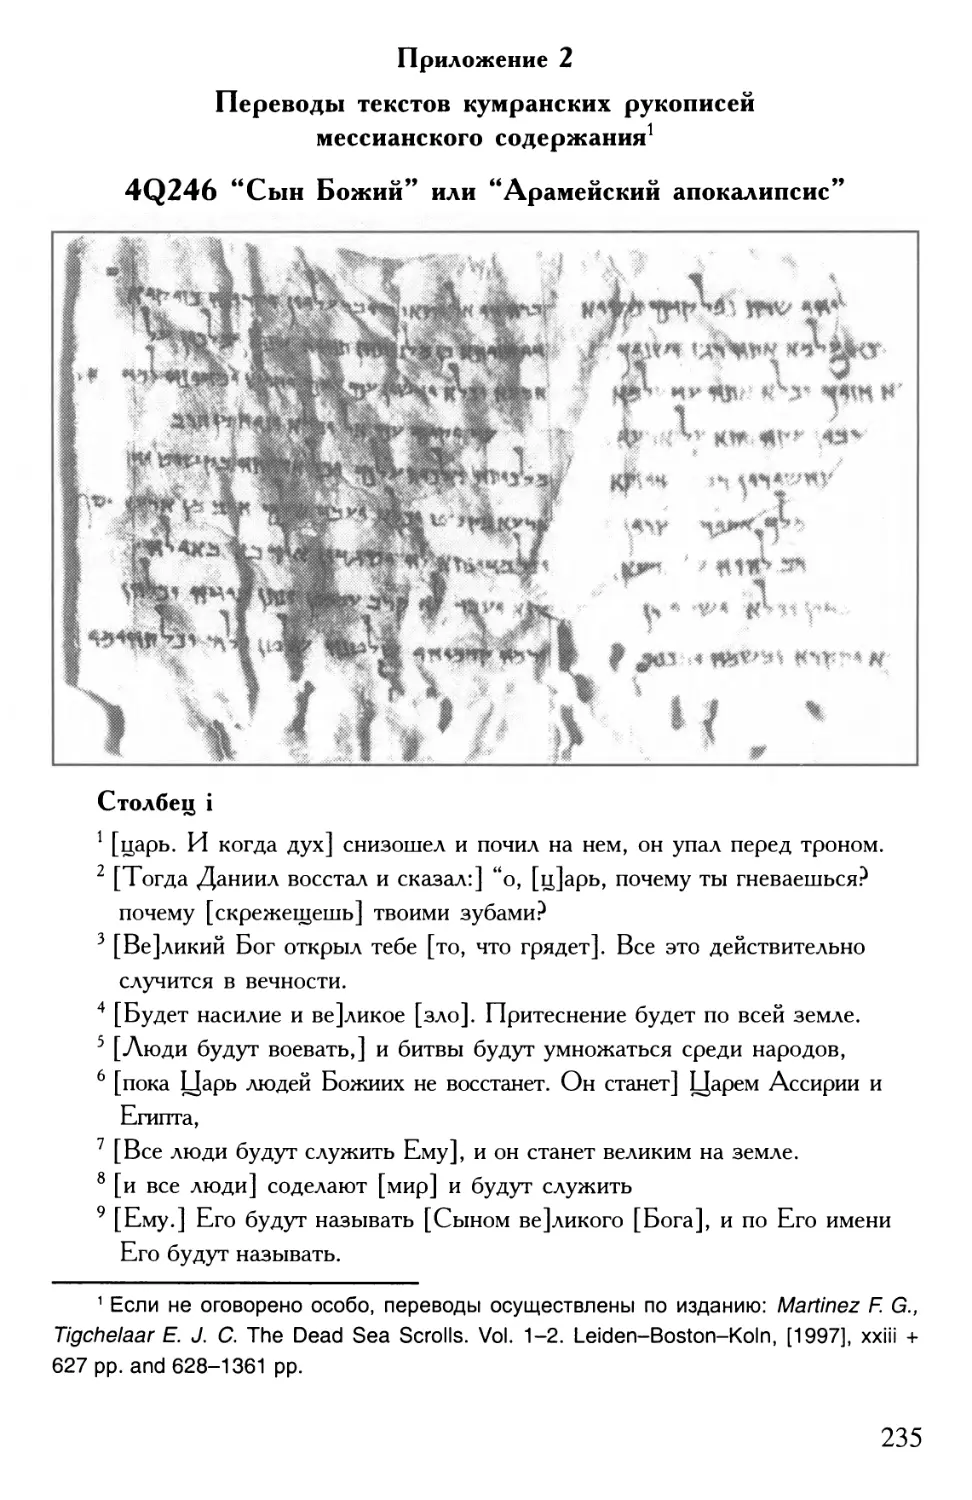 Приложение 2. Переводы текстов кумранских рукописей мессианского содержания
20. Рукопись 4Q246 “Сын Божий”